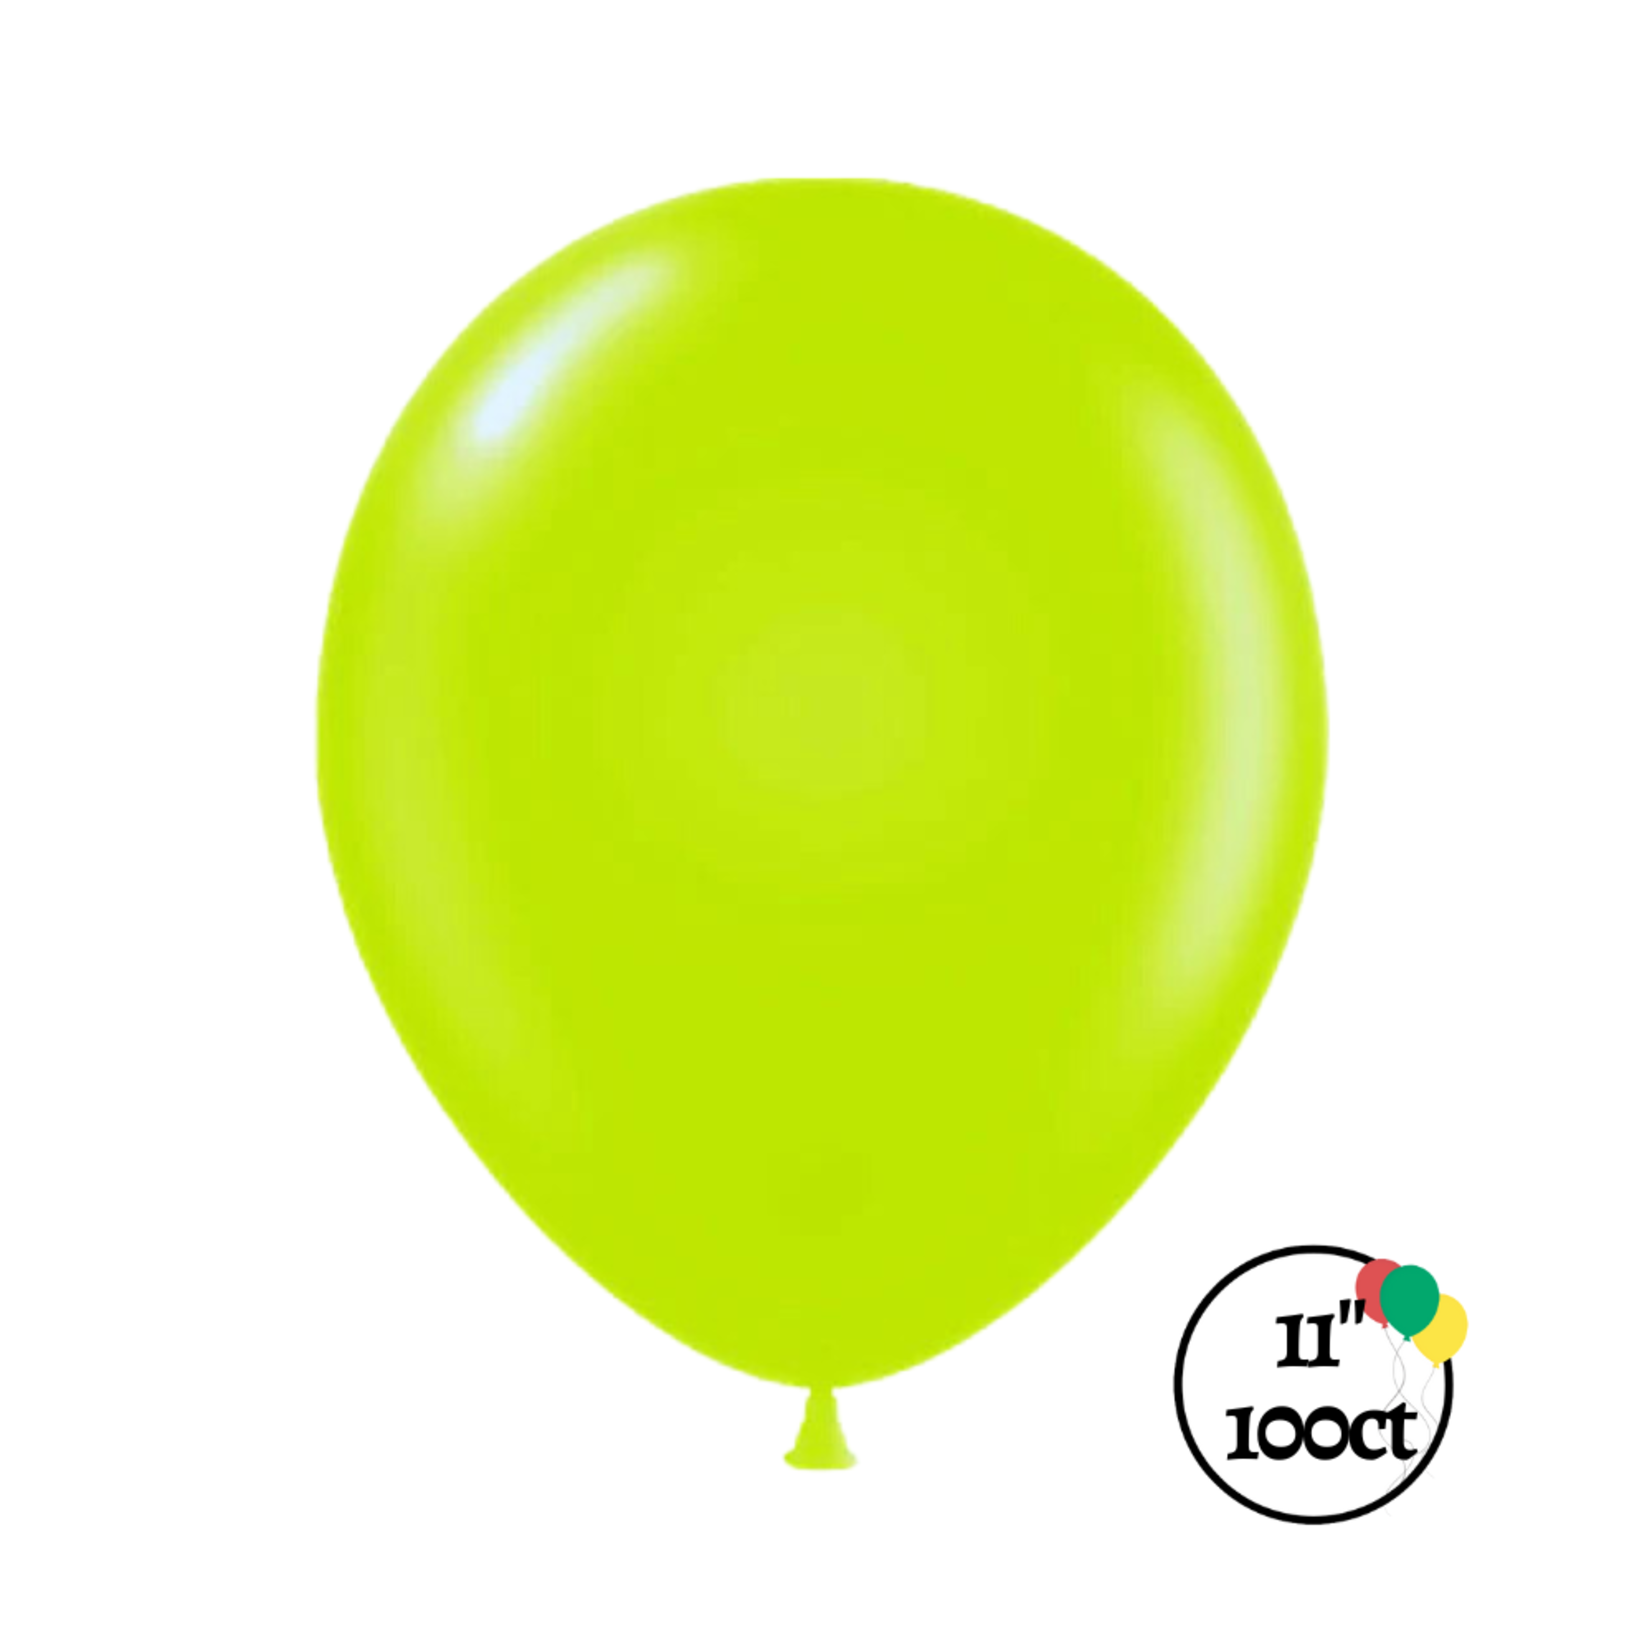 Tuftex 11" Tuftex Lime Green Balloon 100ct